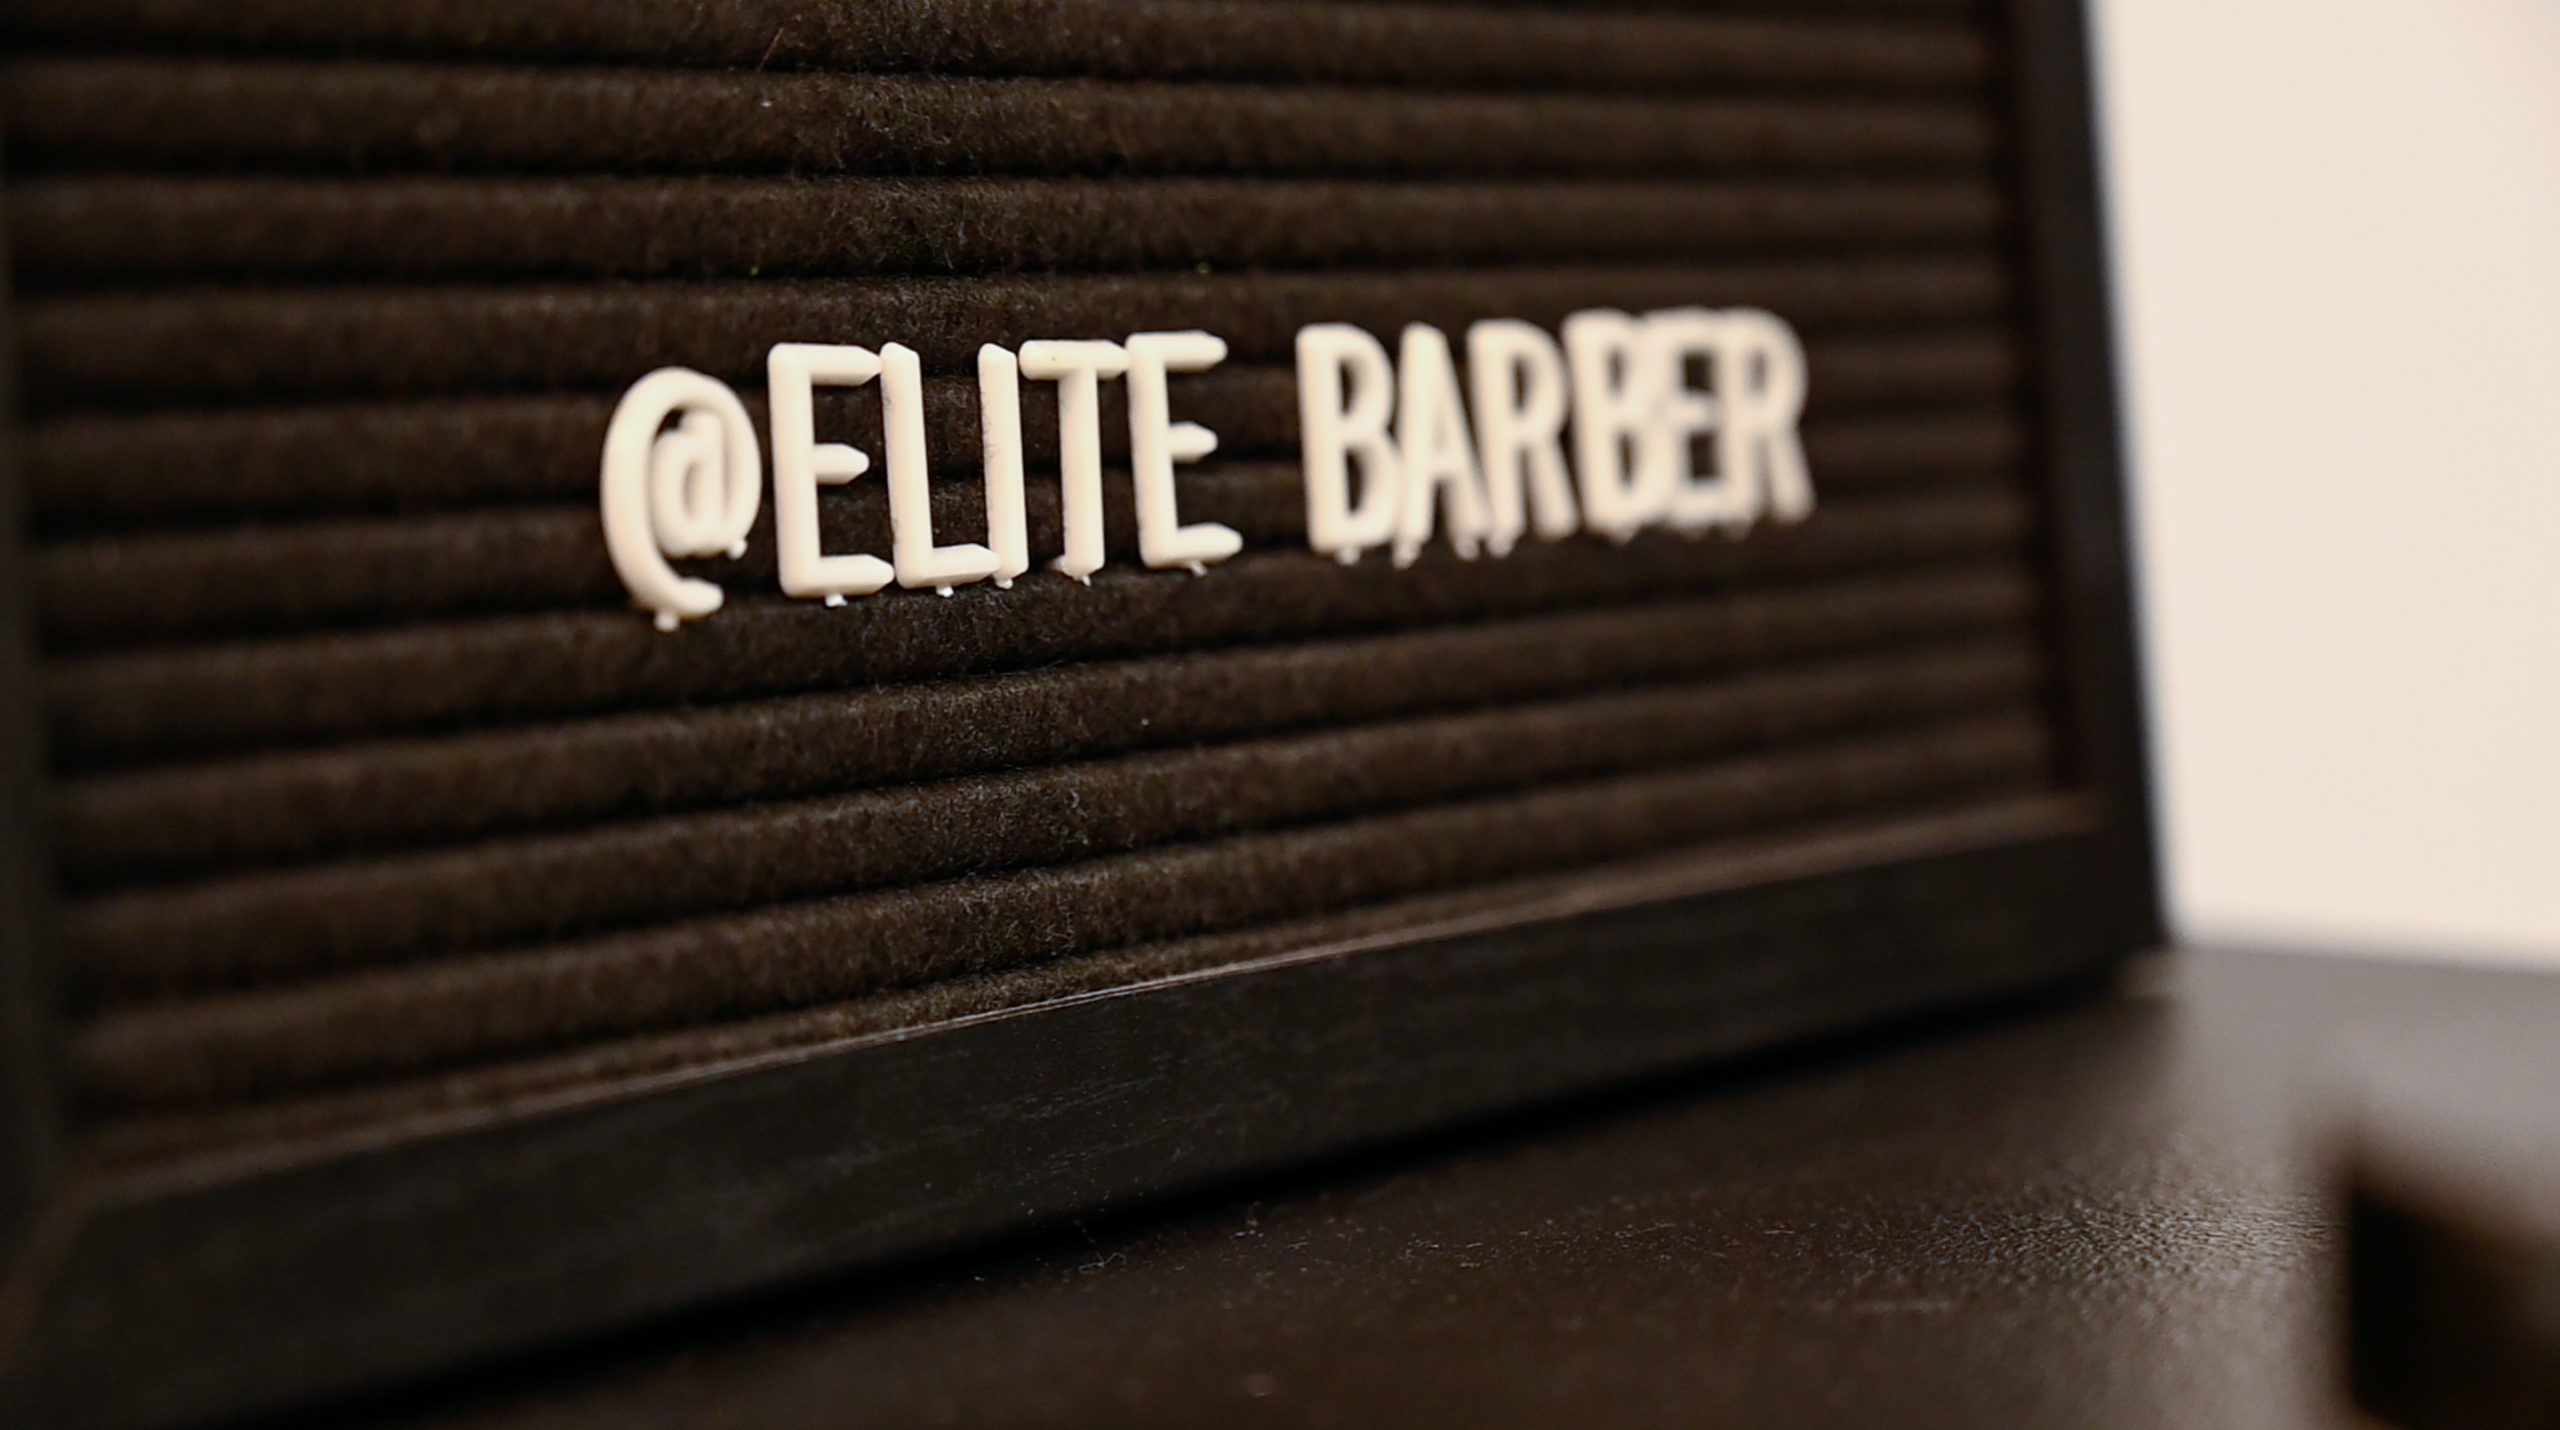 Elite barber